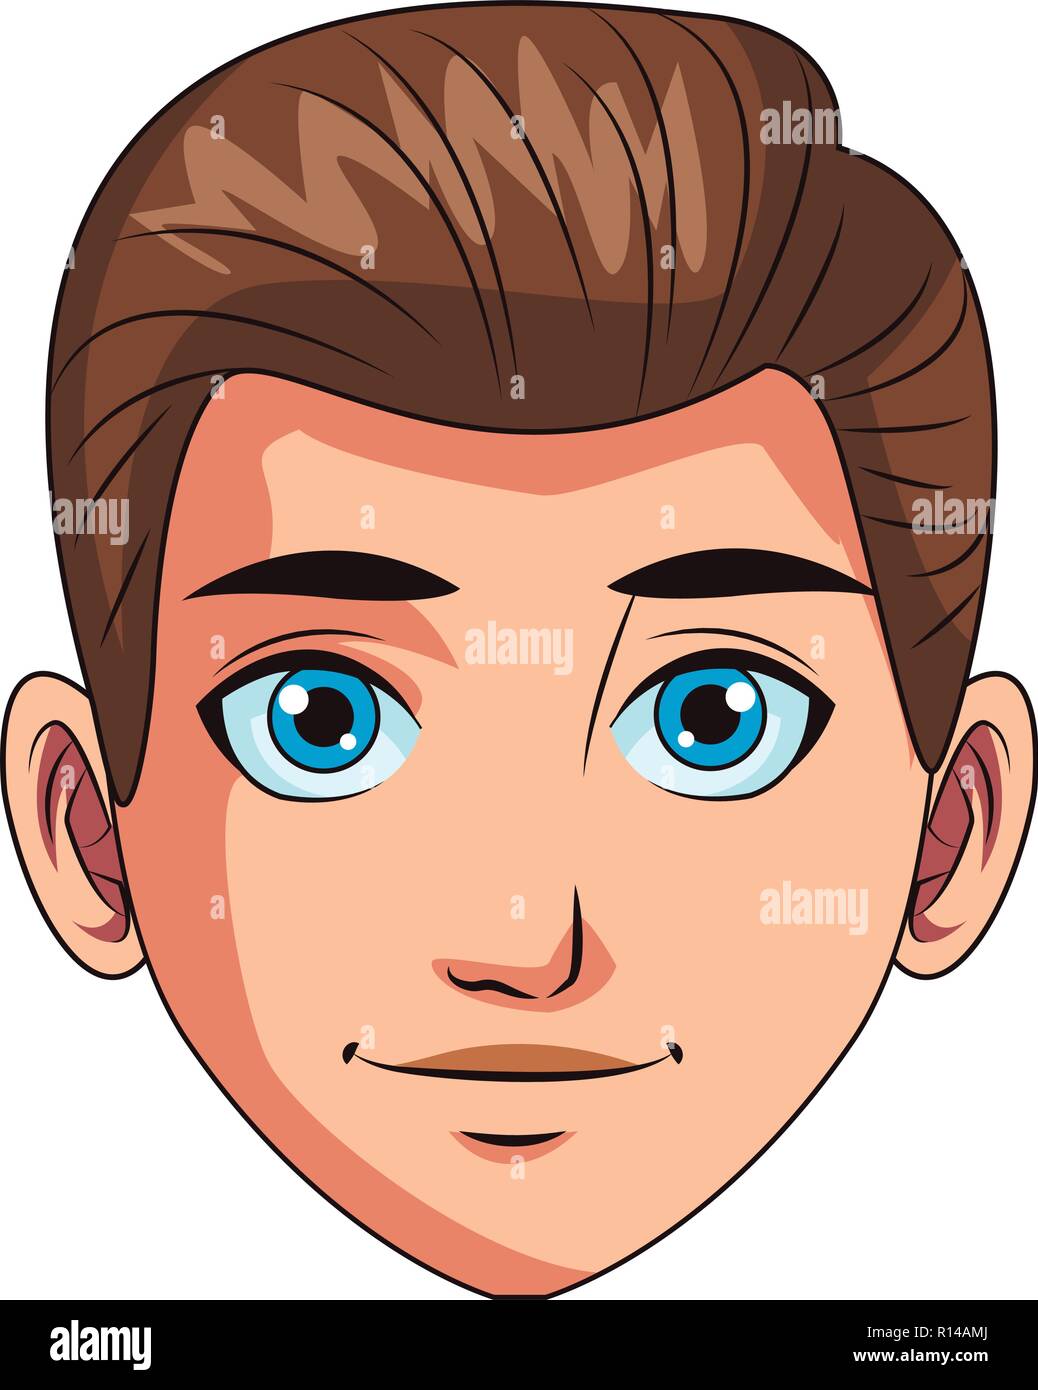 young man face cartoon Stock Vector Image & Art - Alamy